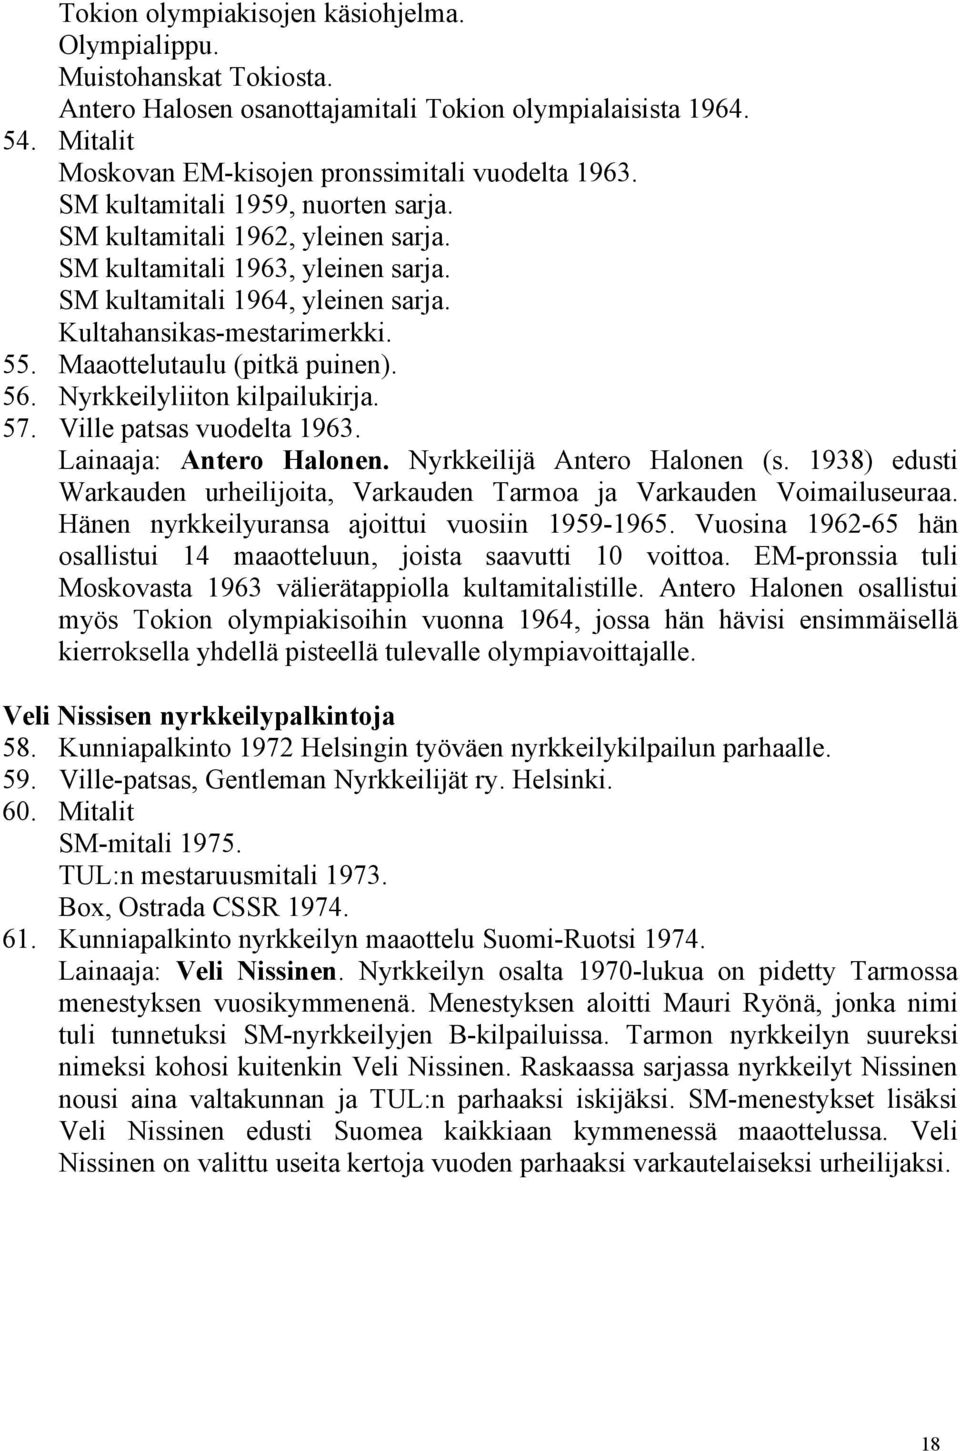 Maaottelutaulu (pitkä puinen). 56. Nyrkkeilyliiton kilpailukirja. 57. Ville patsas vuodelta 1963. Lainaaja: Antero Halonen. Nyrkkeilijä Antero Halonen (s.